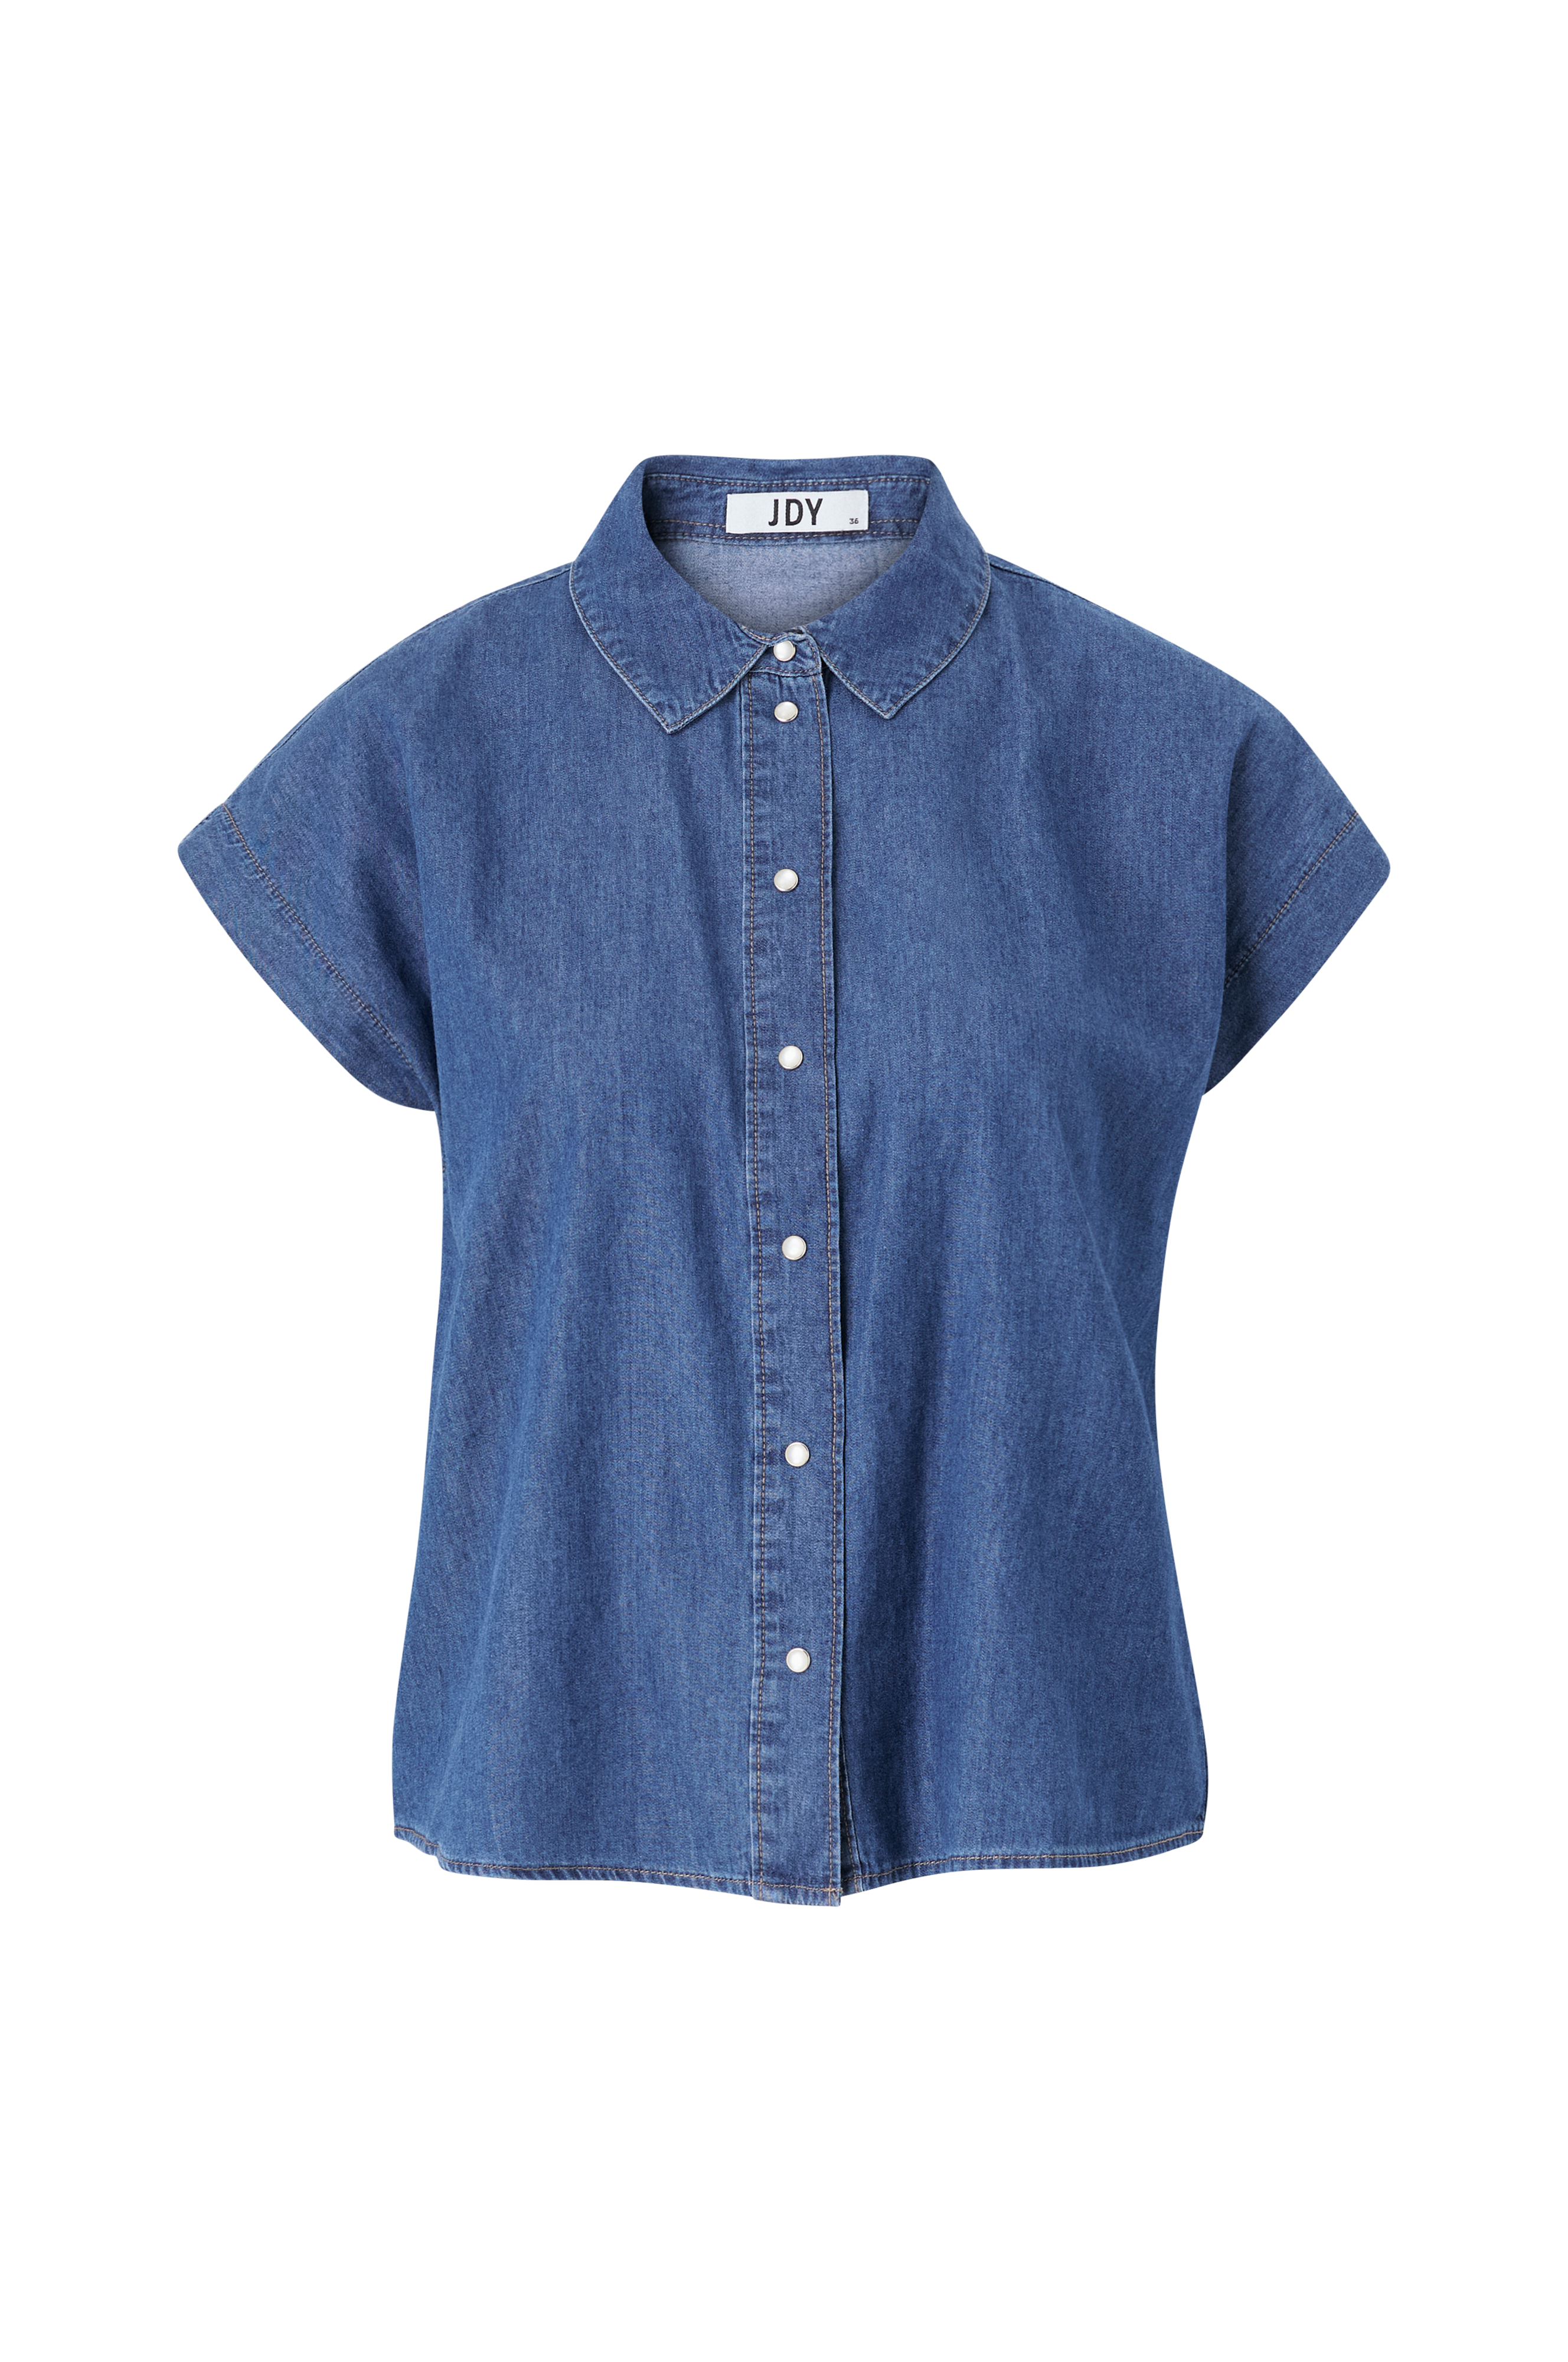 Bluse Wvn Bluser - Blå jdySaint Shirt - S/L JDY